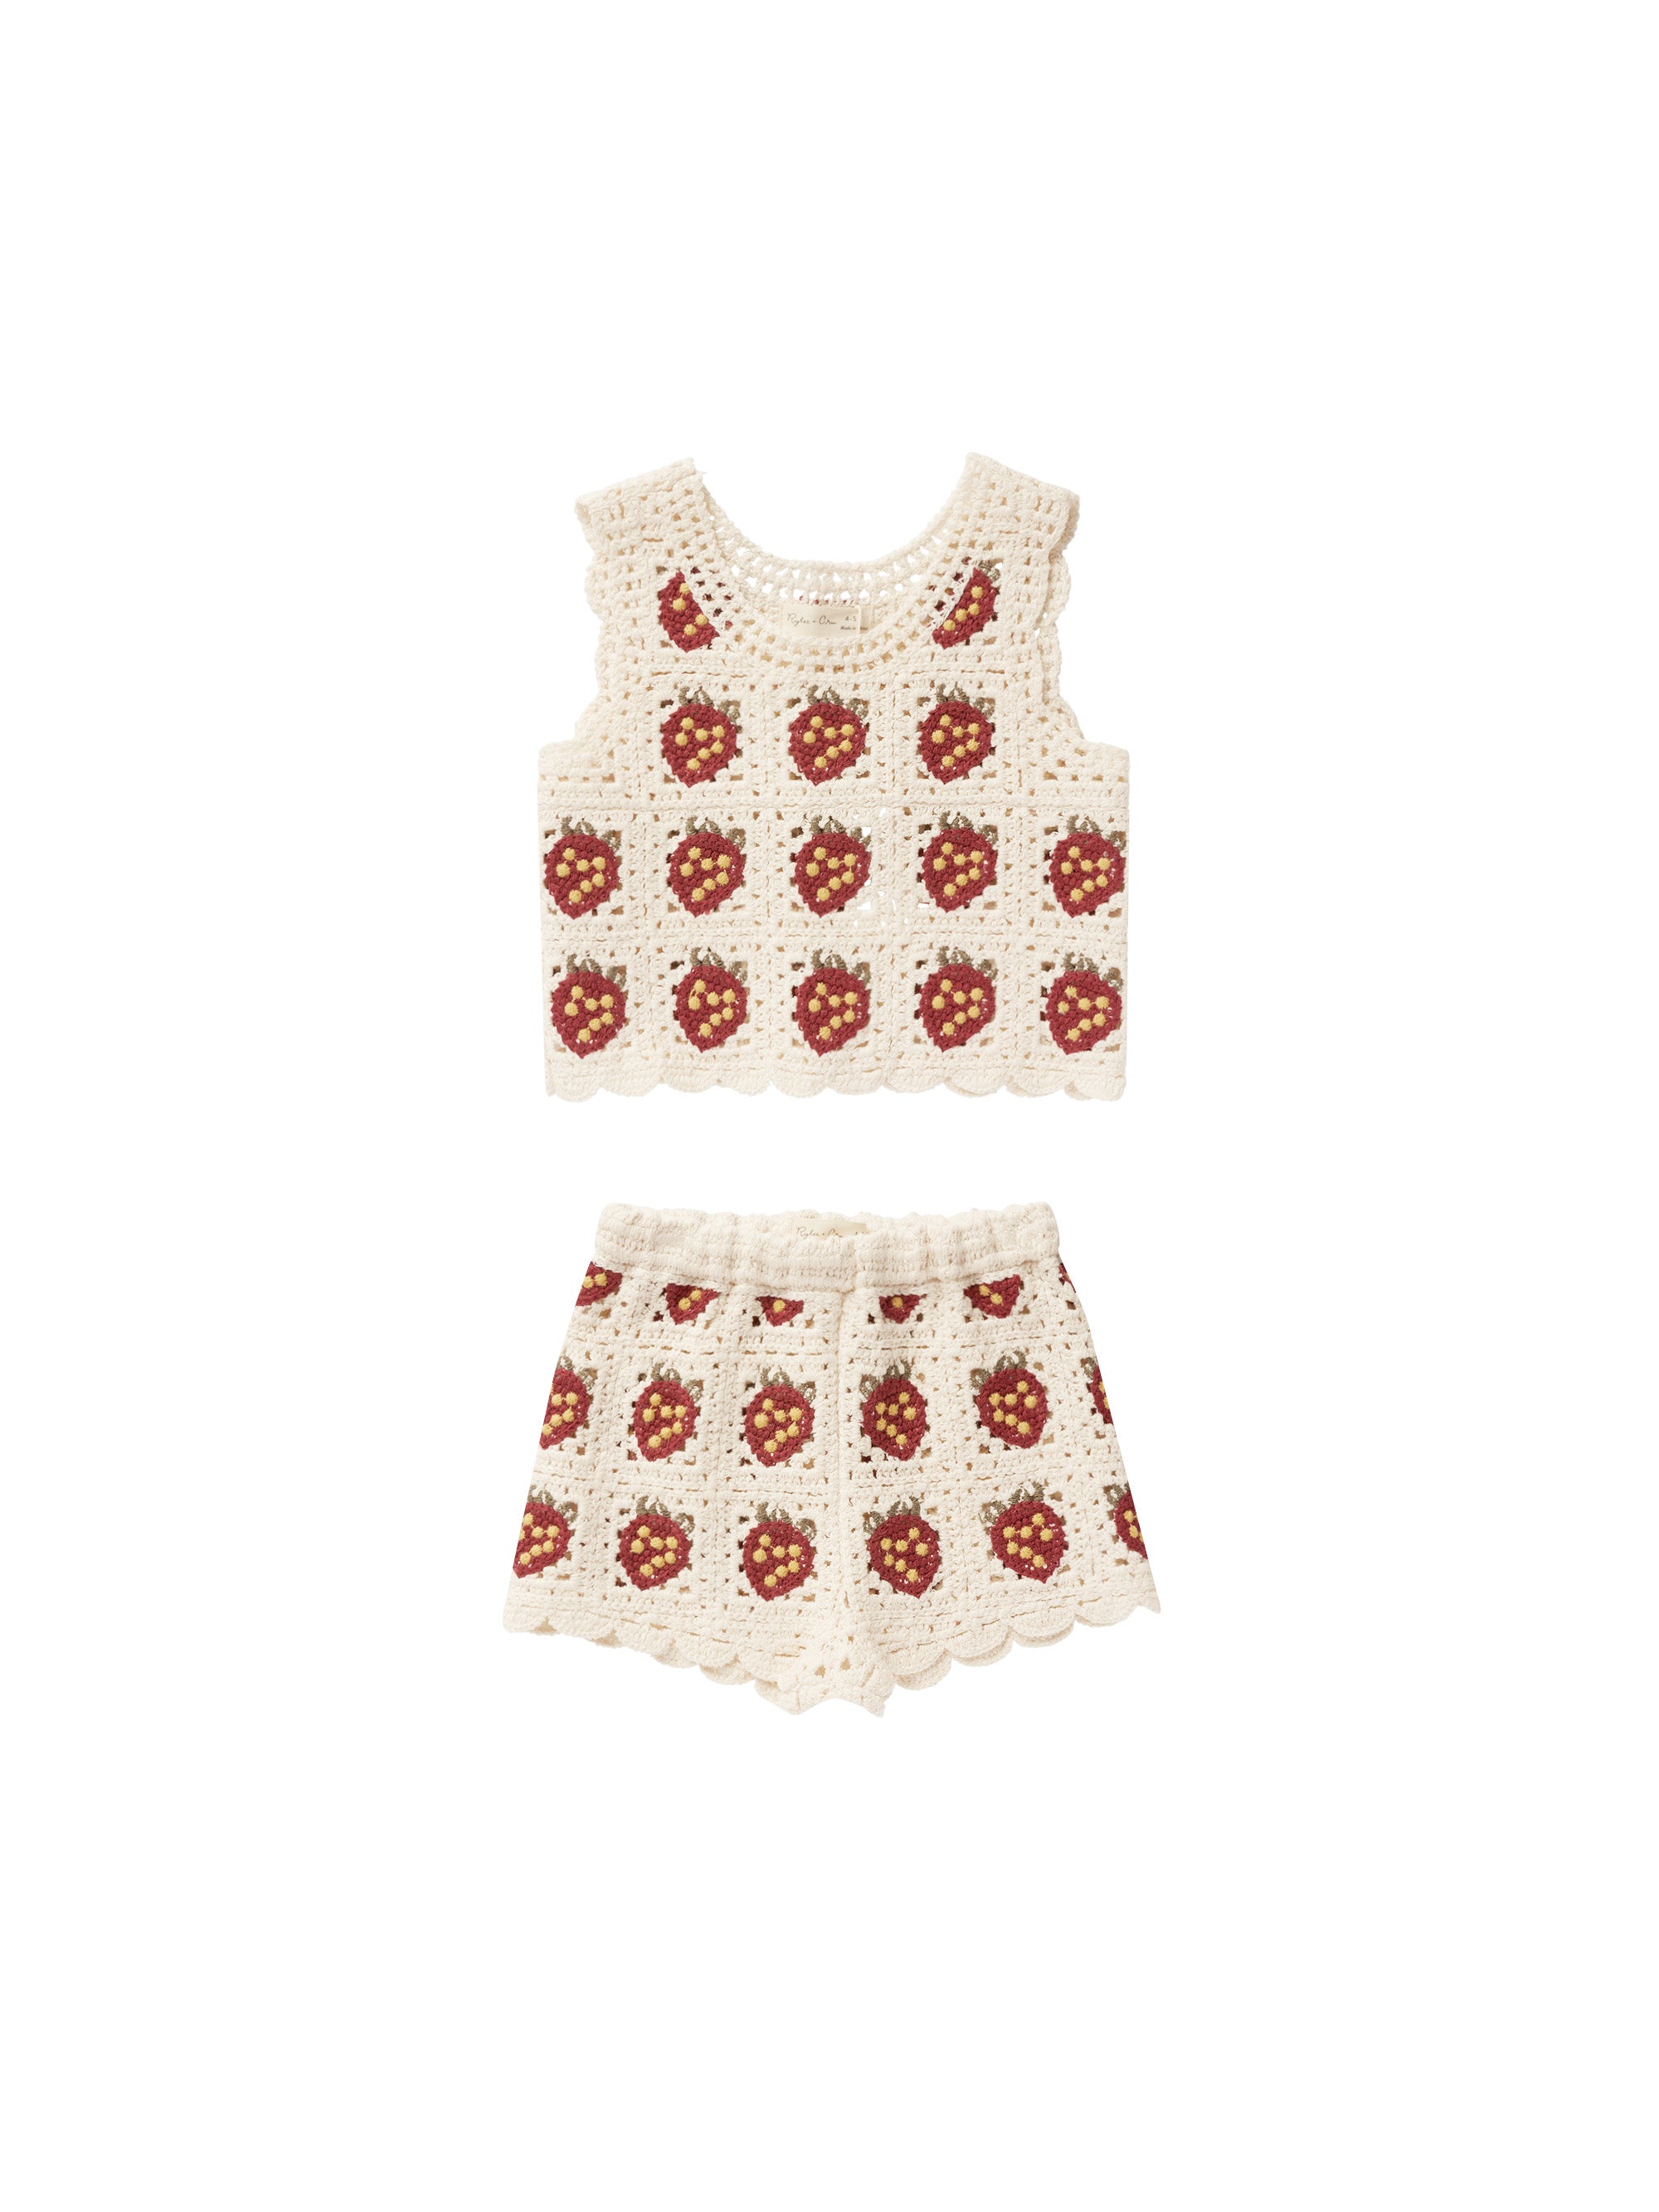 Crochet Tank Set - Strawberry - Twinkle Twinkle Little One